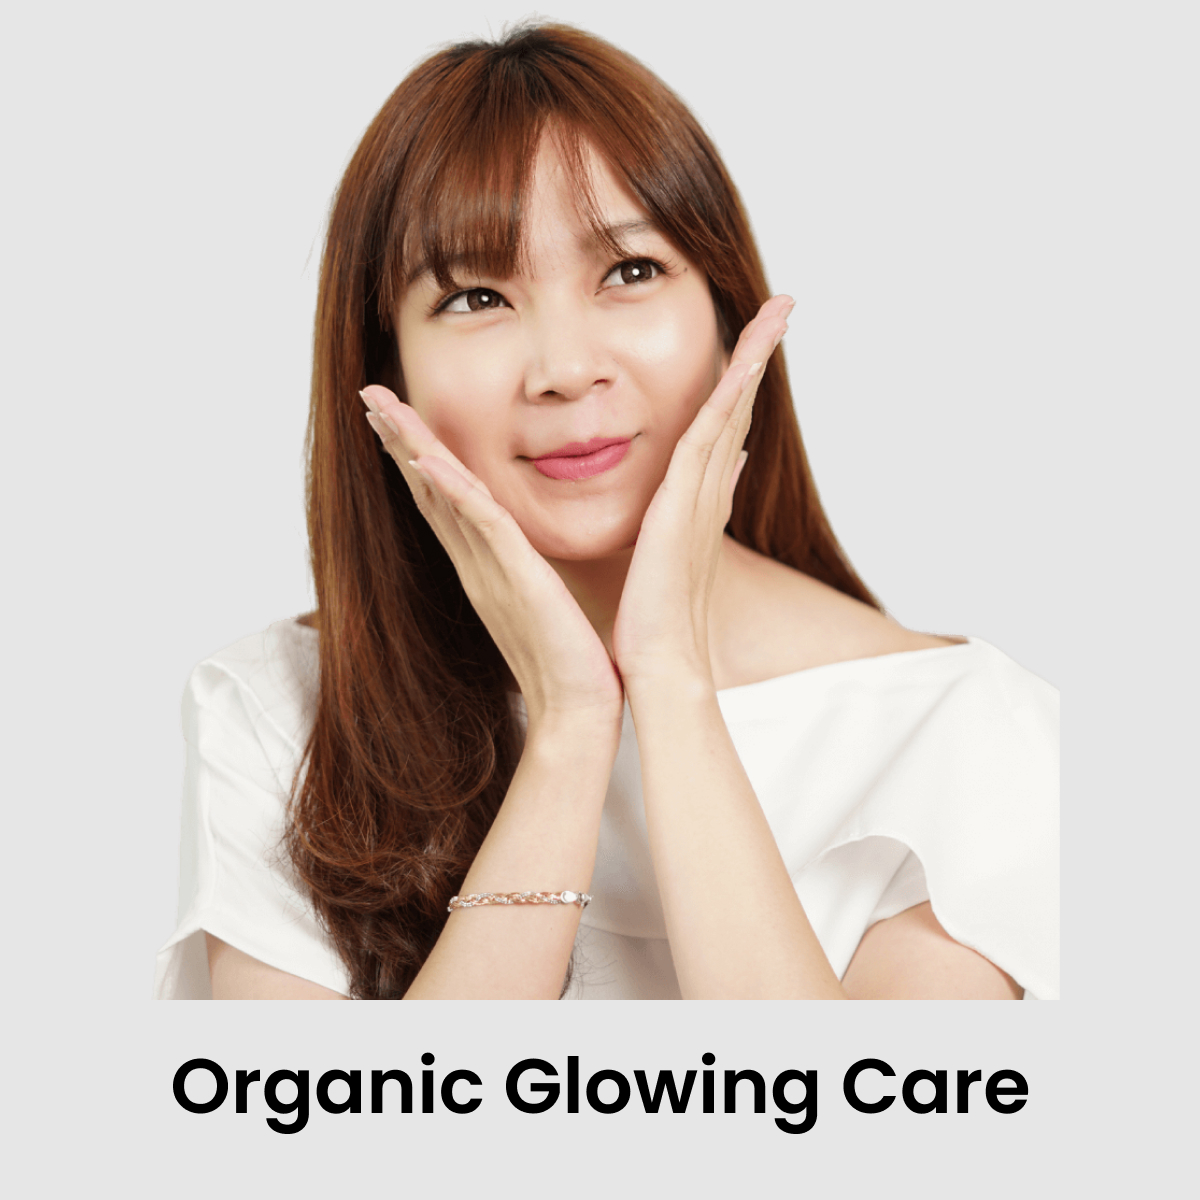 Organic Glowing Care